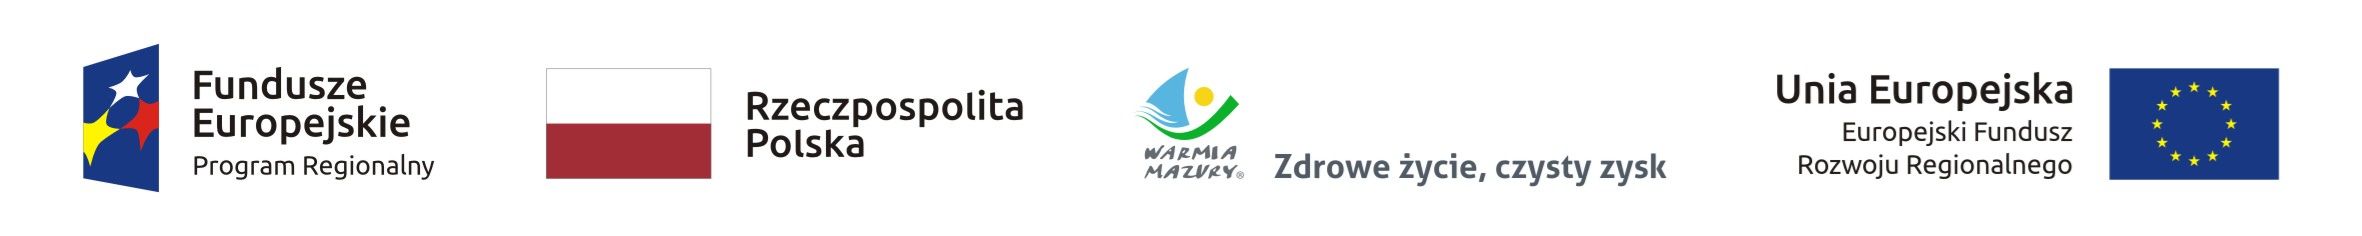 Logo Funduszu Eurpjeksiego, flaga Polski, Warmia i Mazury